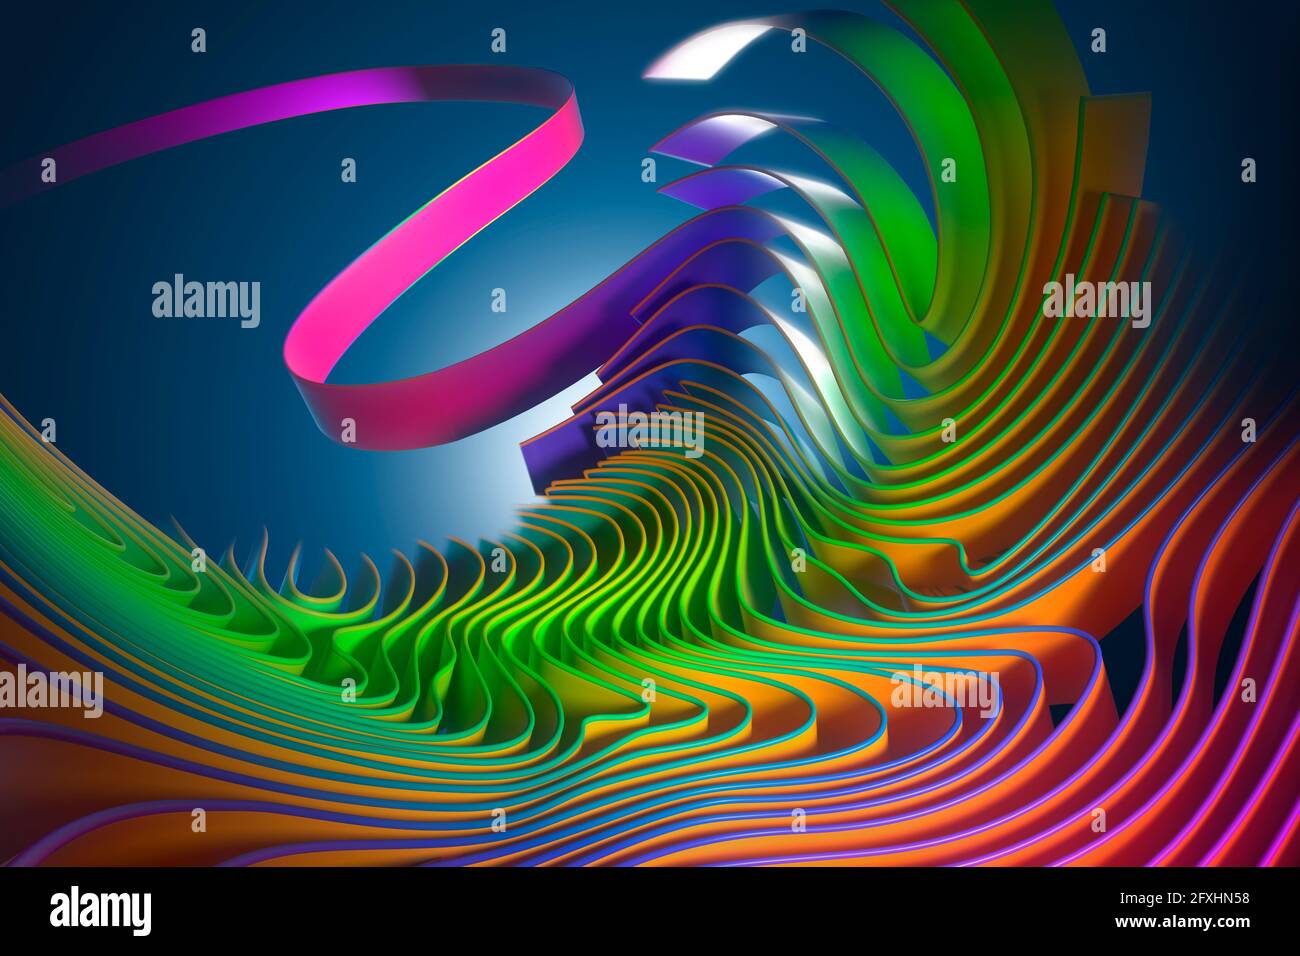 Motif de ruban ondulé multicolore à l'image générée numériquement Banque D'Images